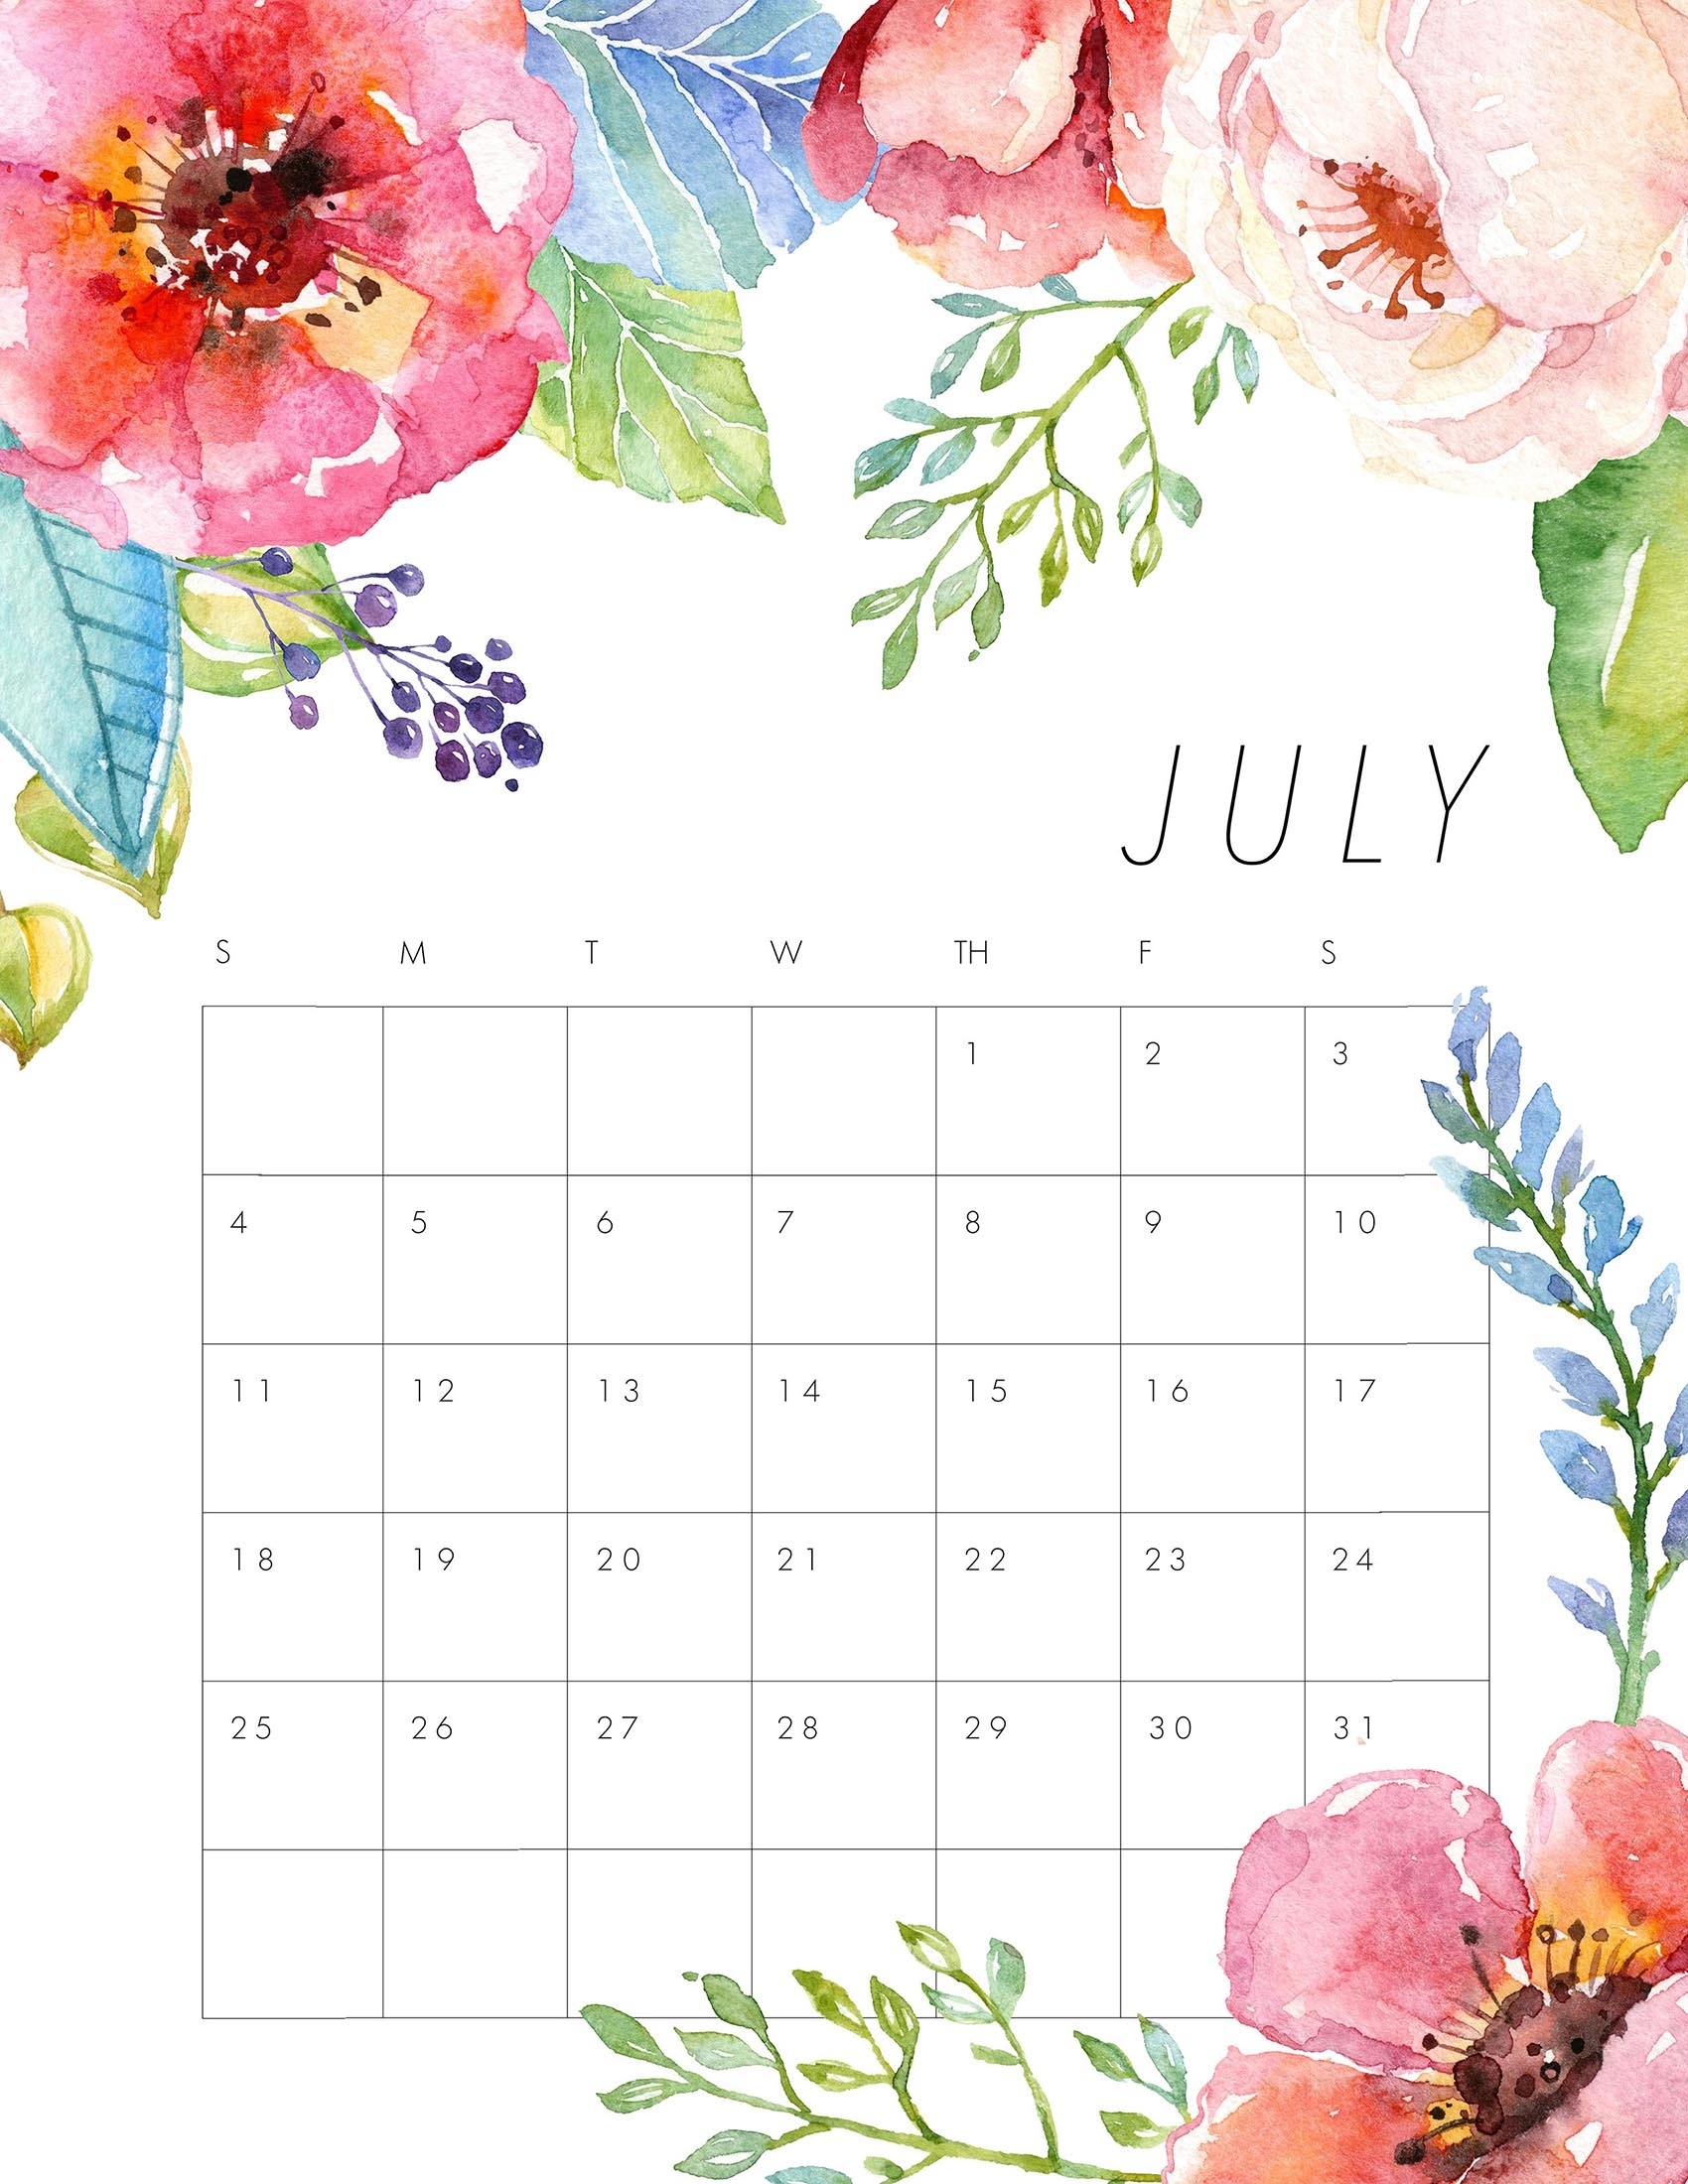 Free Printable 2021 Floral Calendar - The Cottage Market December 2021 Calendar Floral